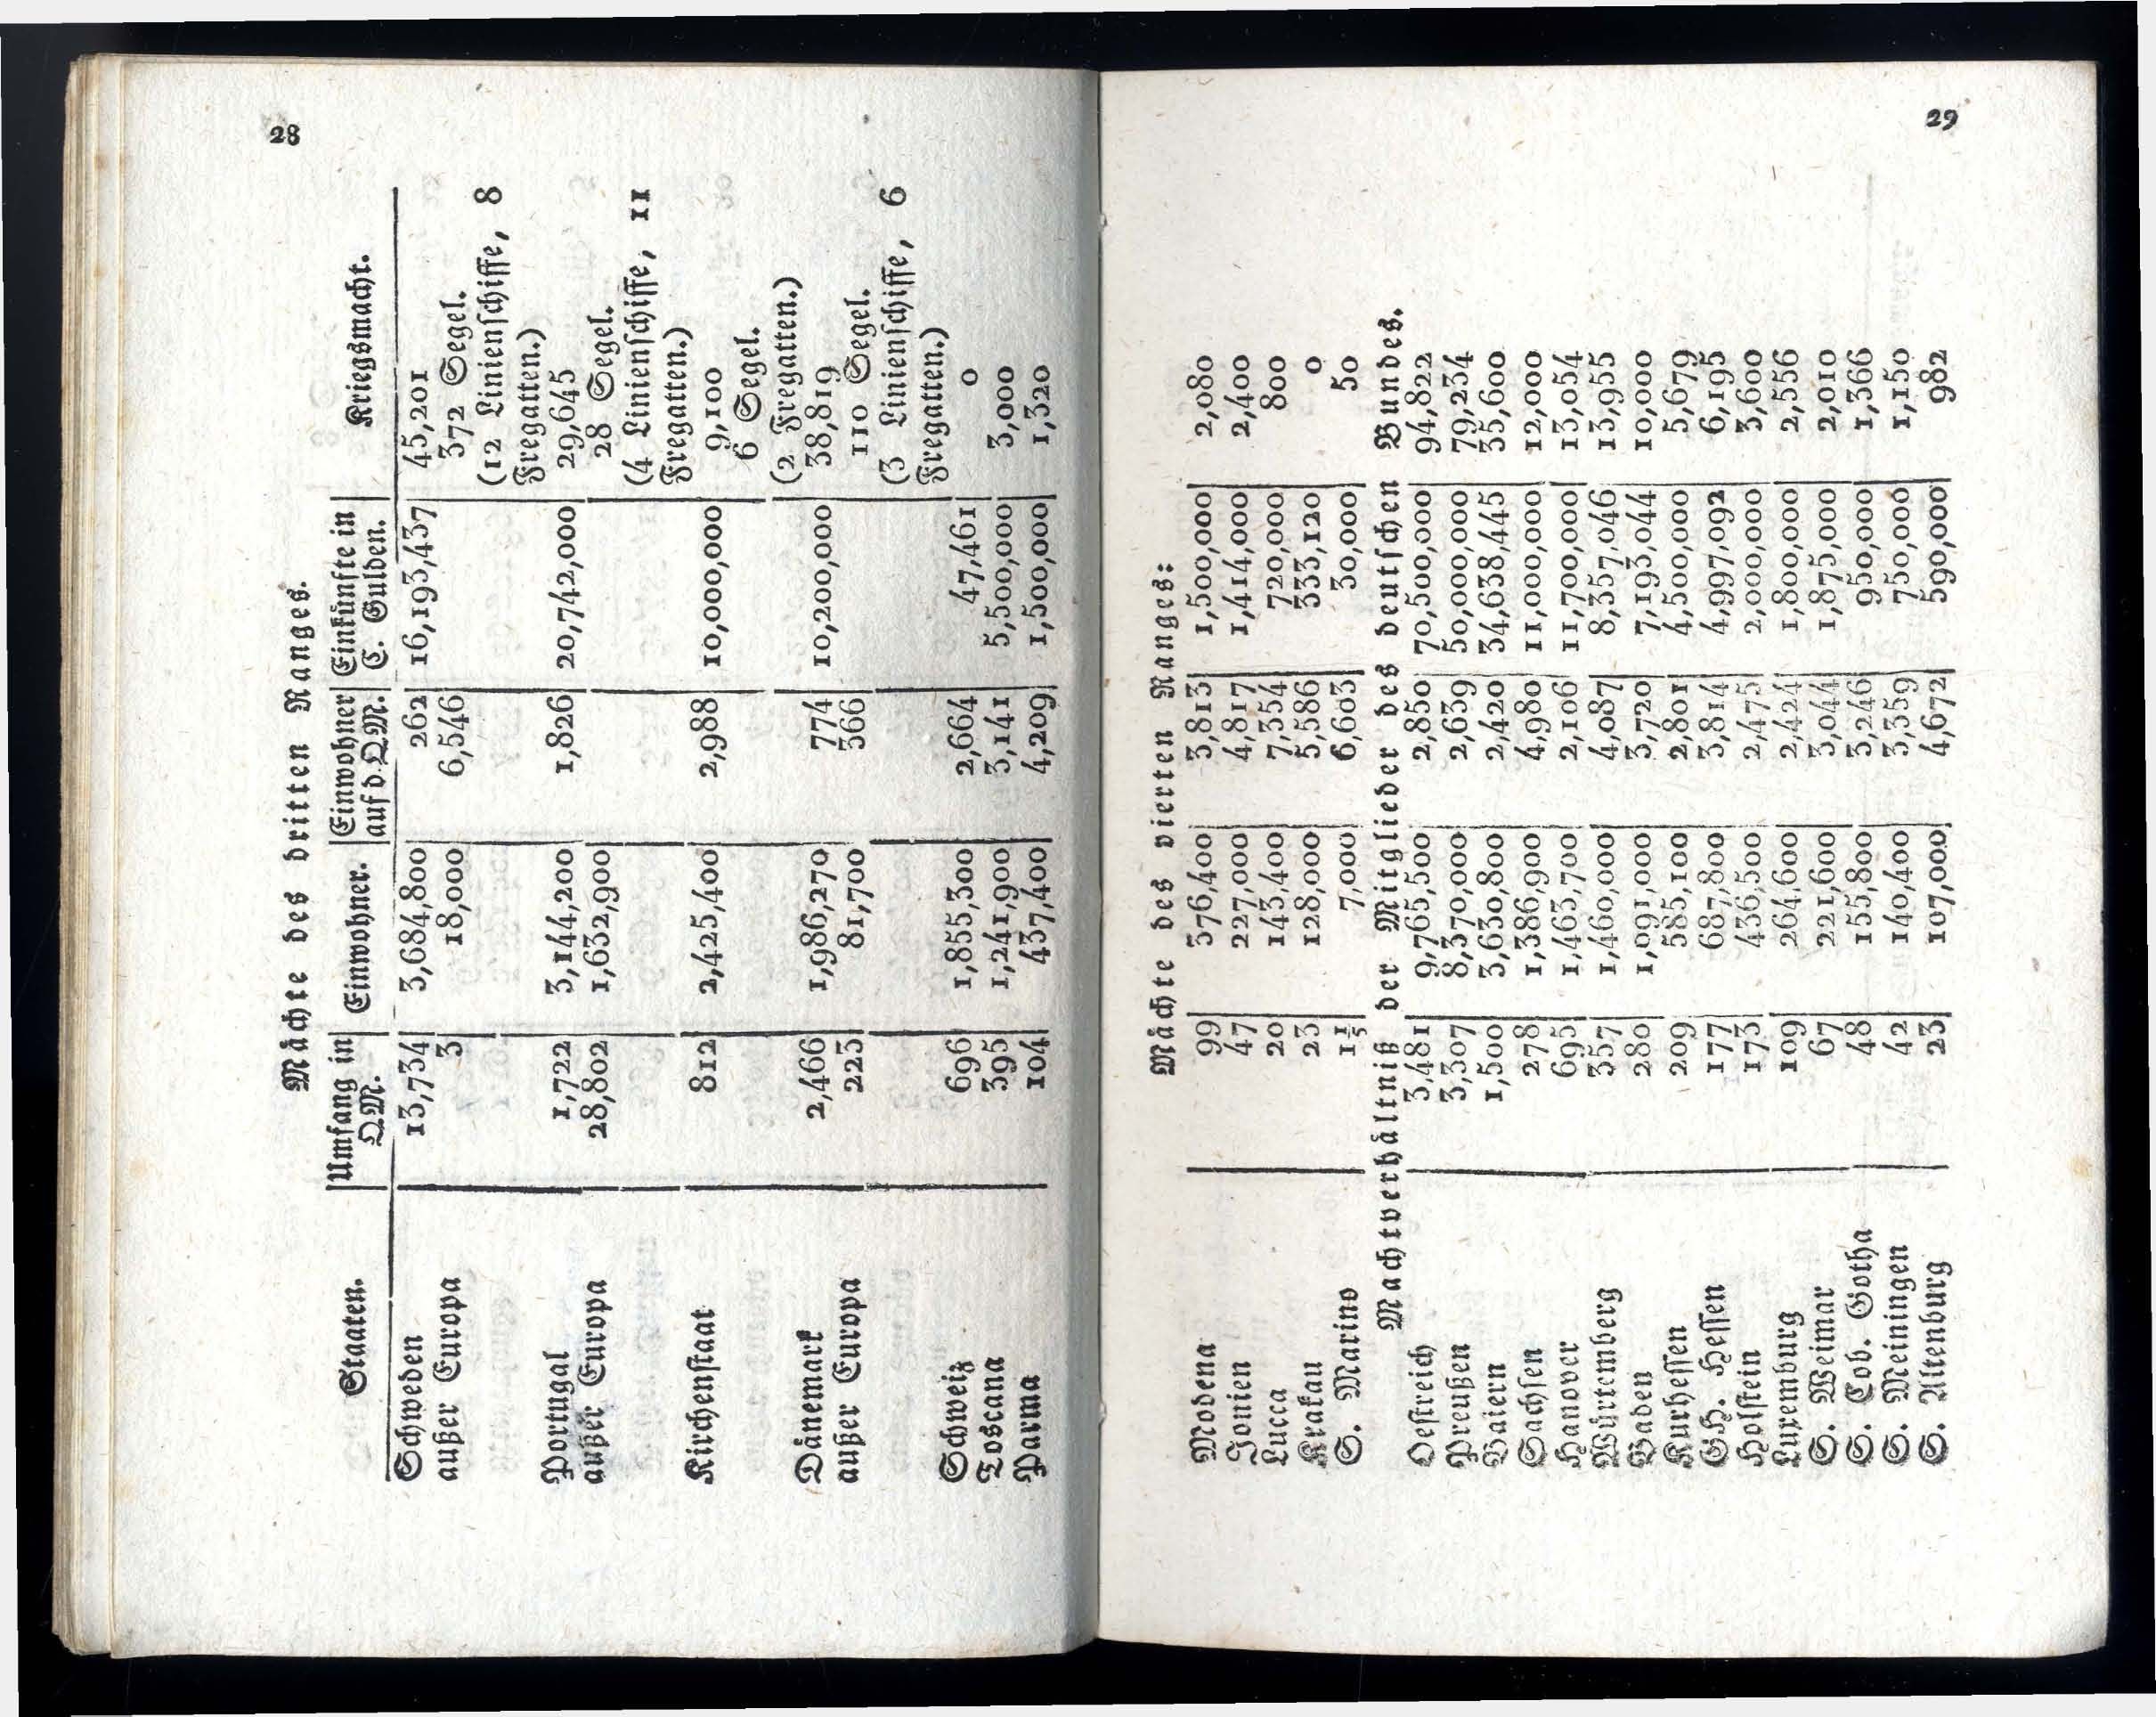 Dörptscher Kalender [1830] (1829) | 22. Main body of text